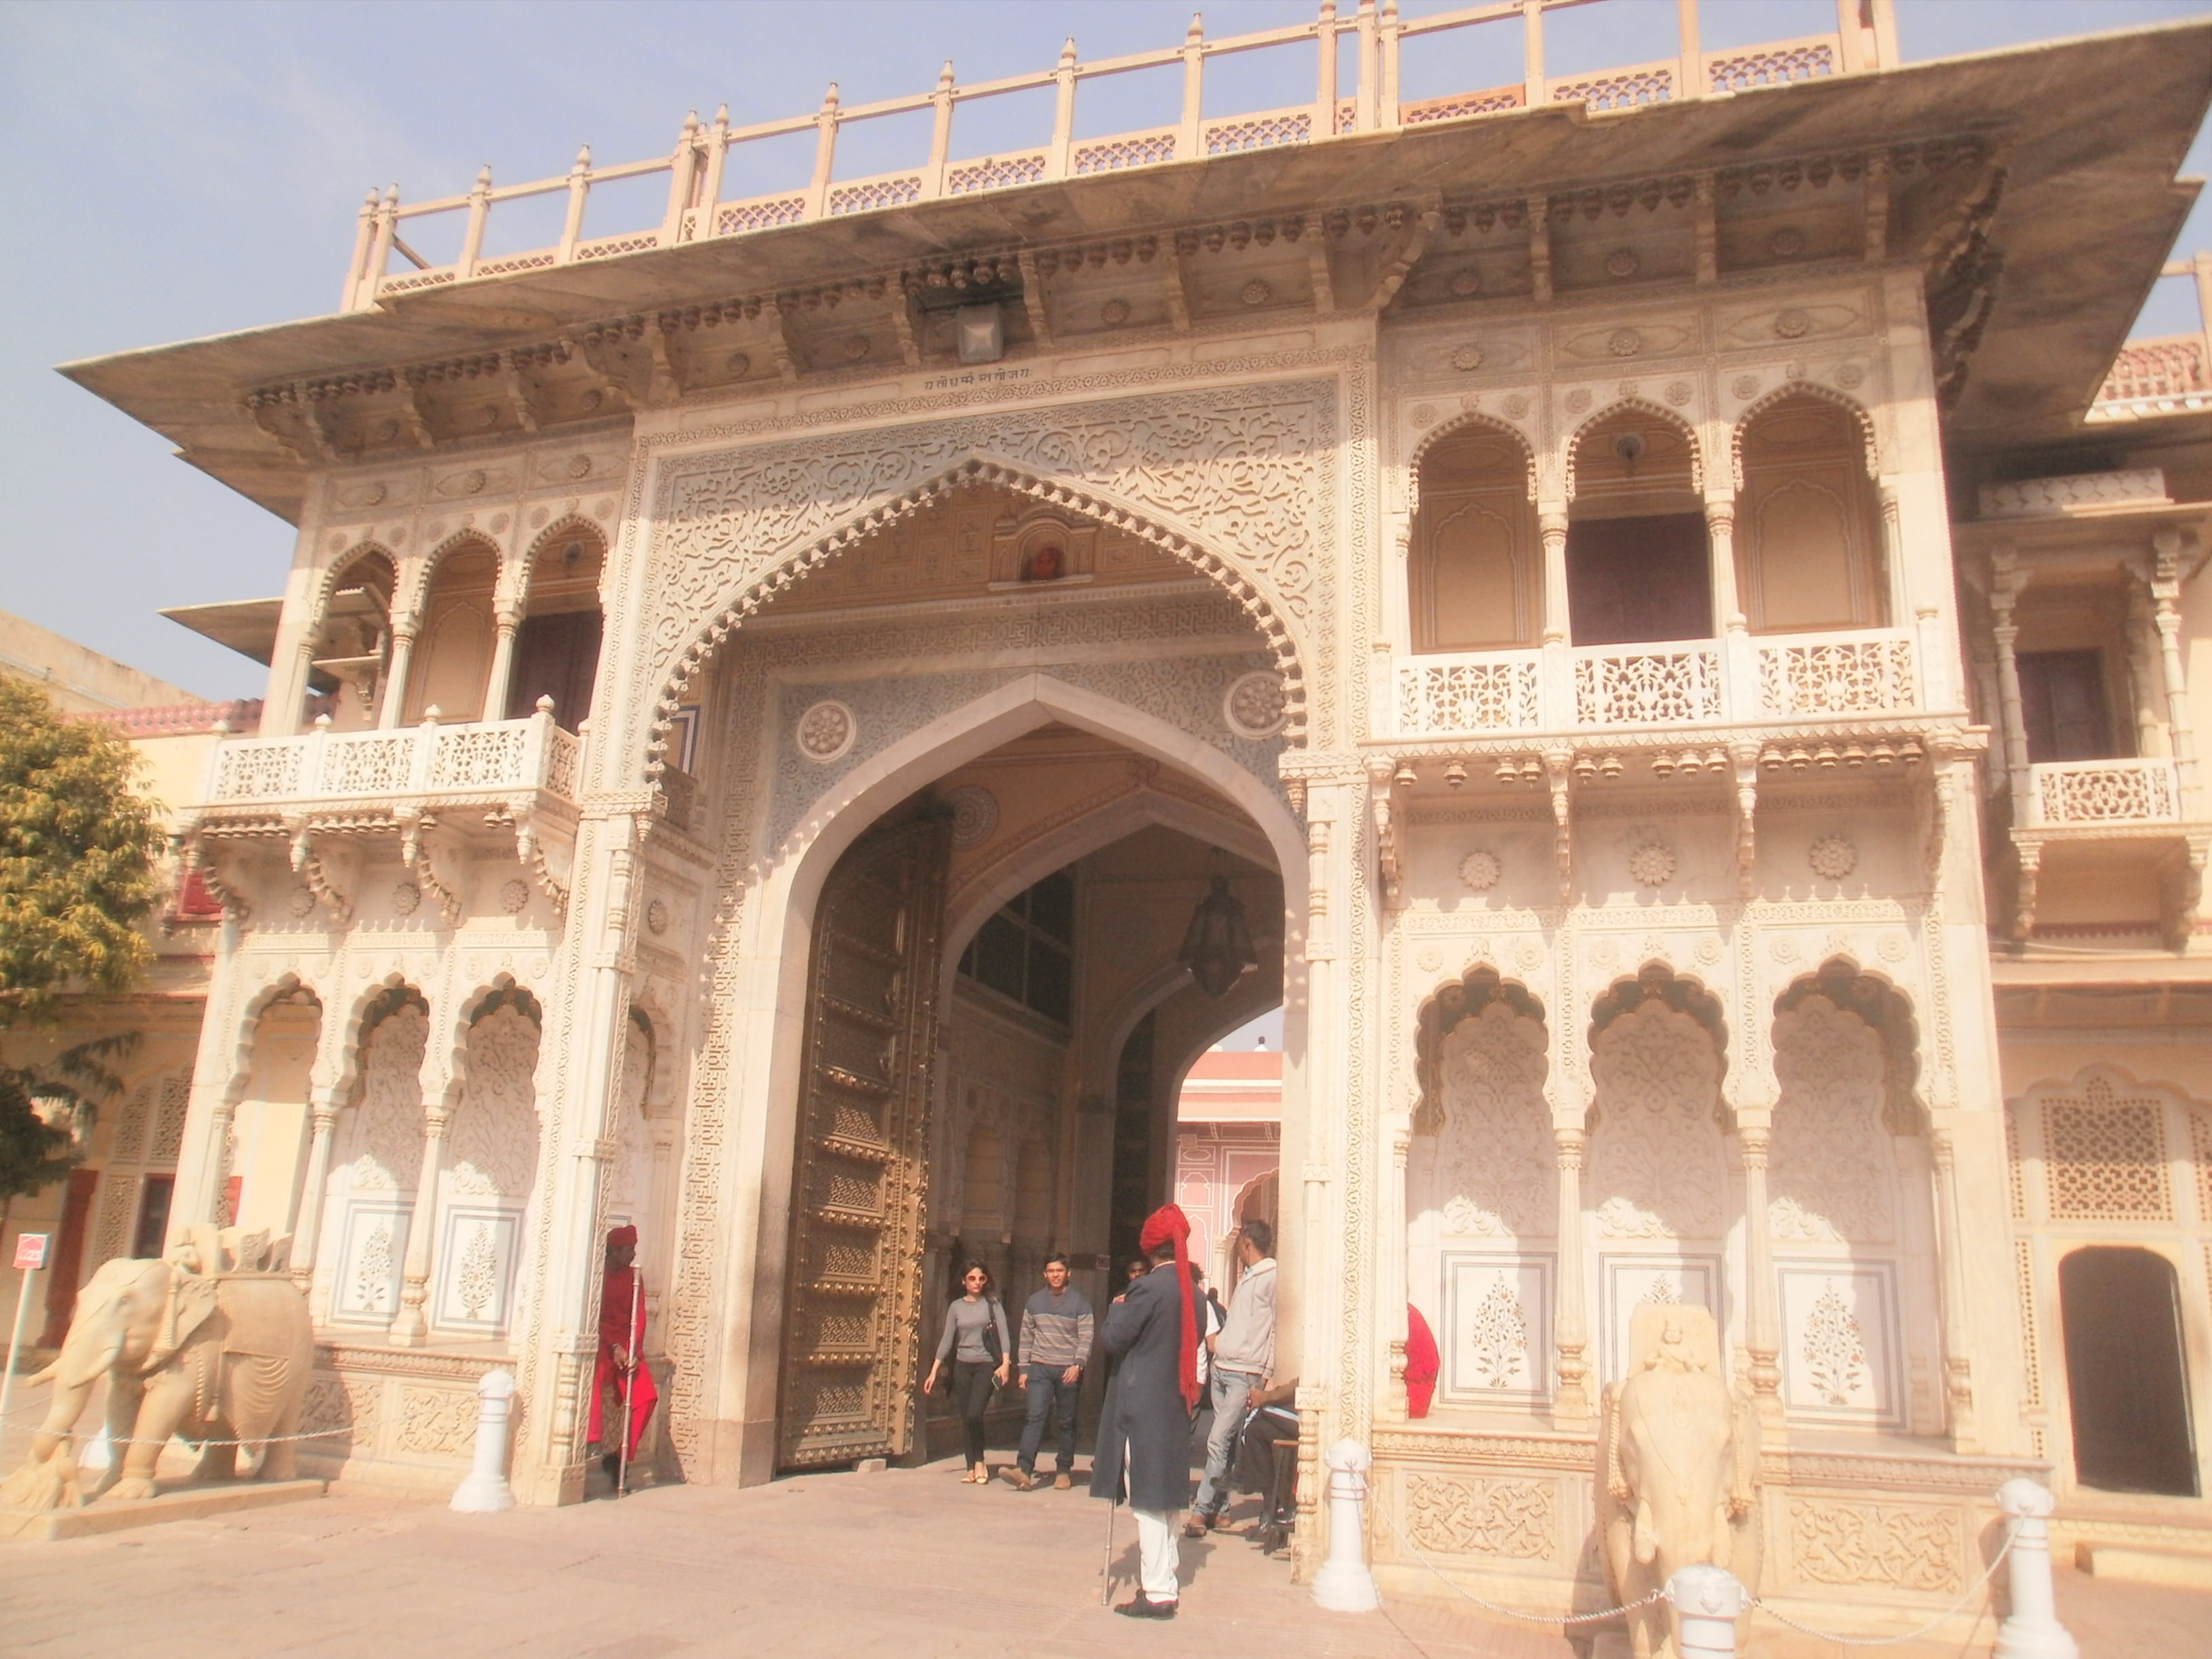 City Palace - Jaipur India